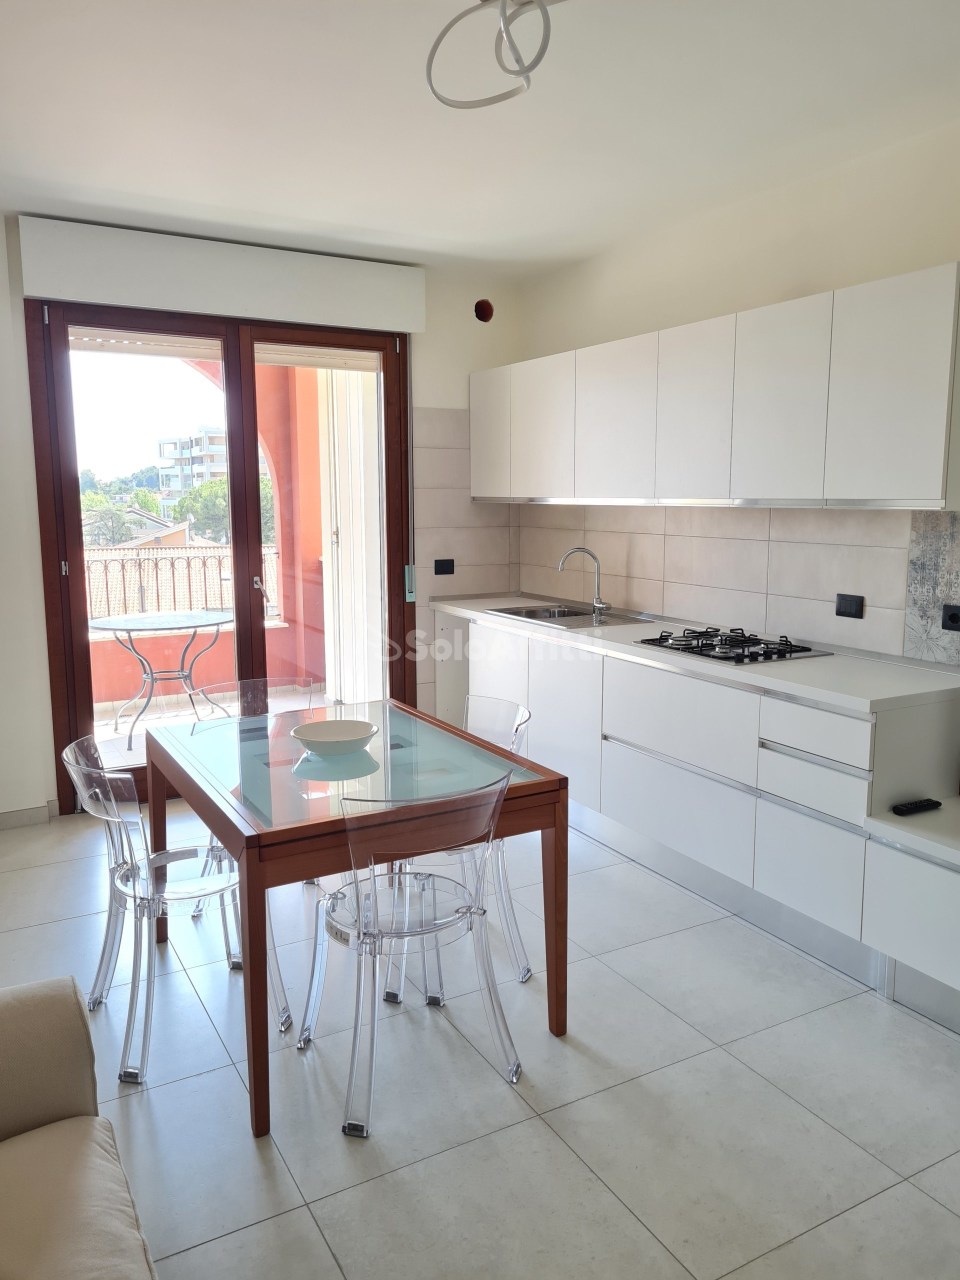 Appartamento in affitto a Montesilvano, 3 locali, prezzo € 700 | PortaleAgenzieImmobiliari.it